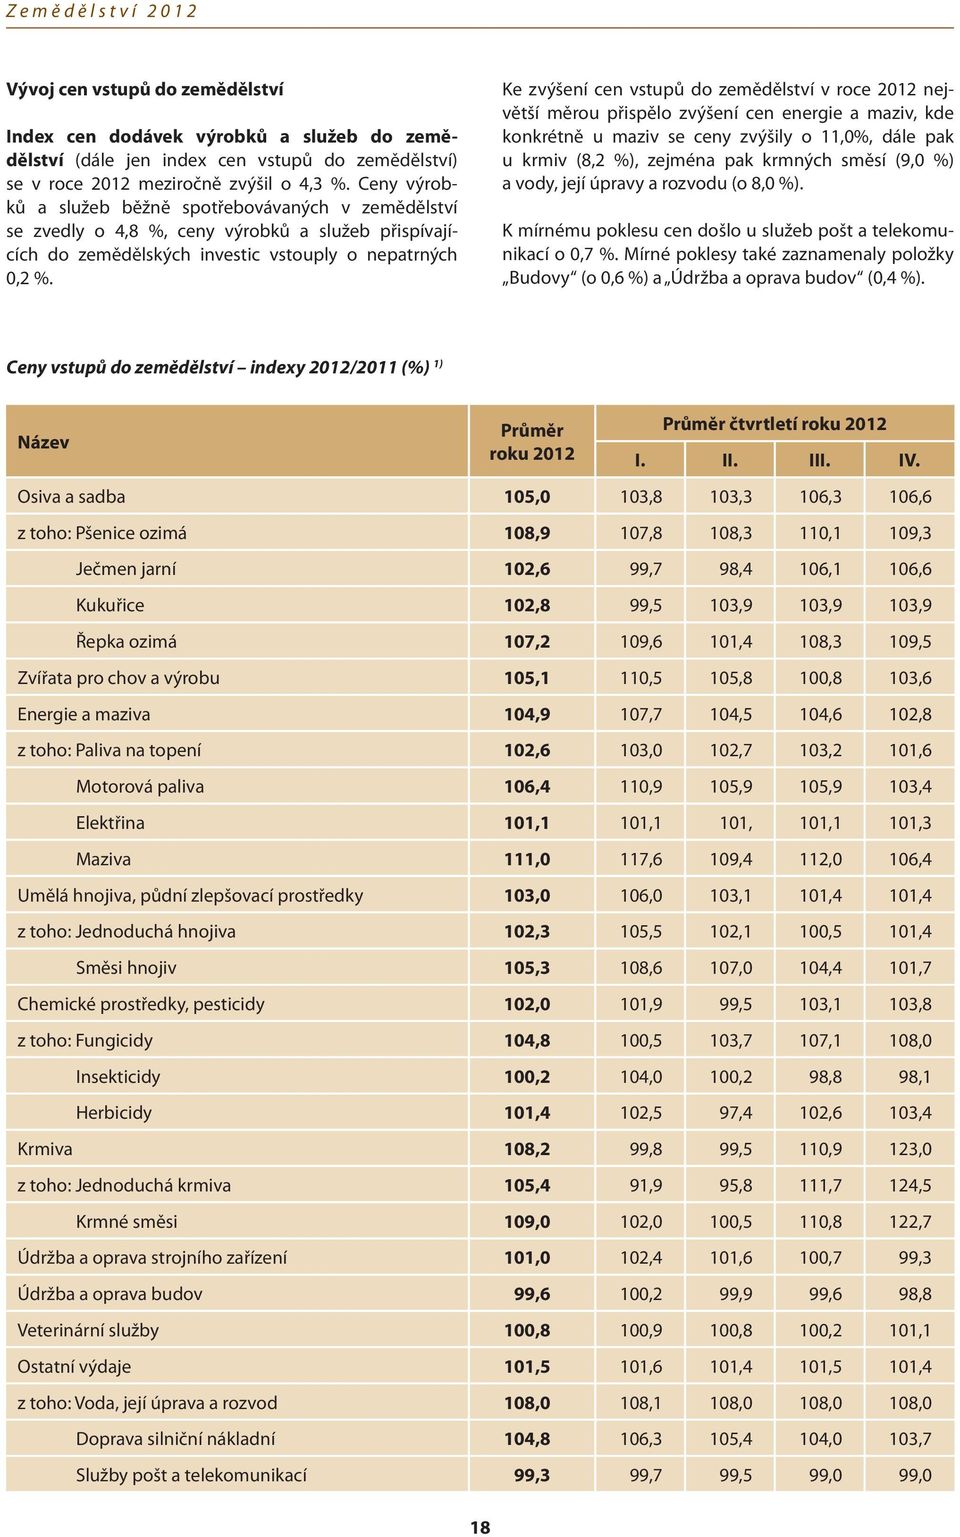 Ke zvýšení cen vstupů do zemědělství v roce 2012 největší měrou přispělo zvýšení cen energie a maziv, kde konkrétně u maziv se ceny zvýšily o 11,0%, dále pak u krmiv (8,2 %), zejména pak krmných